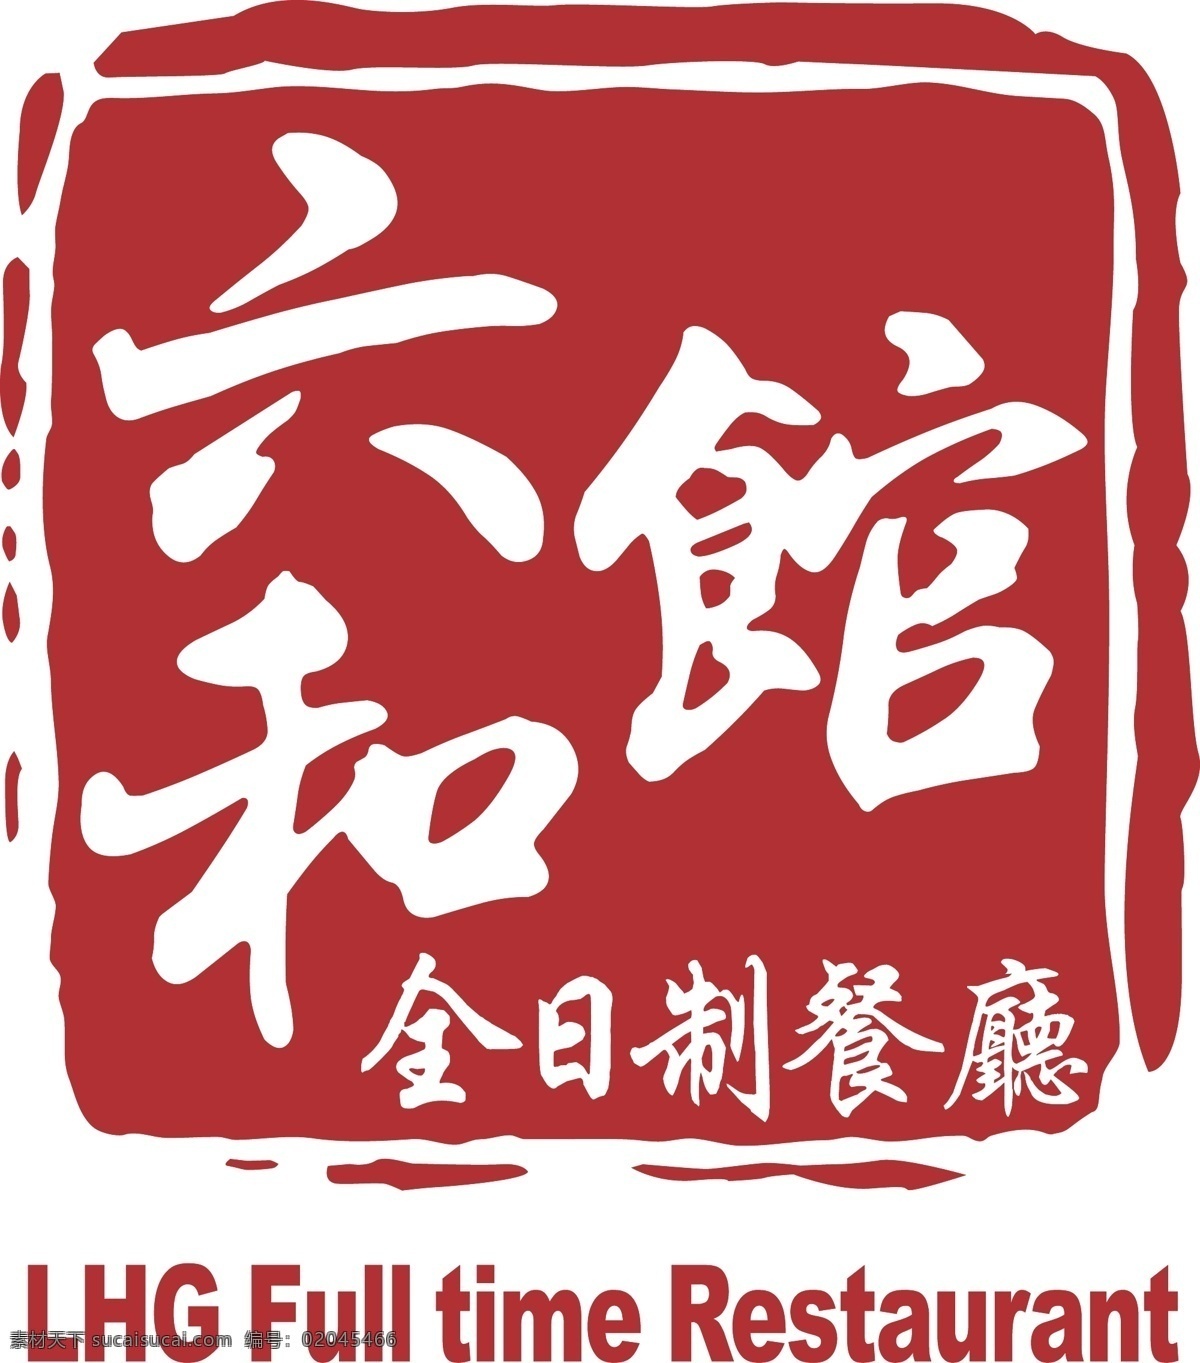 六和 馆 logo 白云 国际会议中心 六和馆餐厅 矢量图